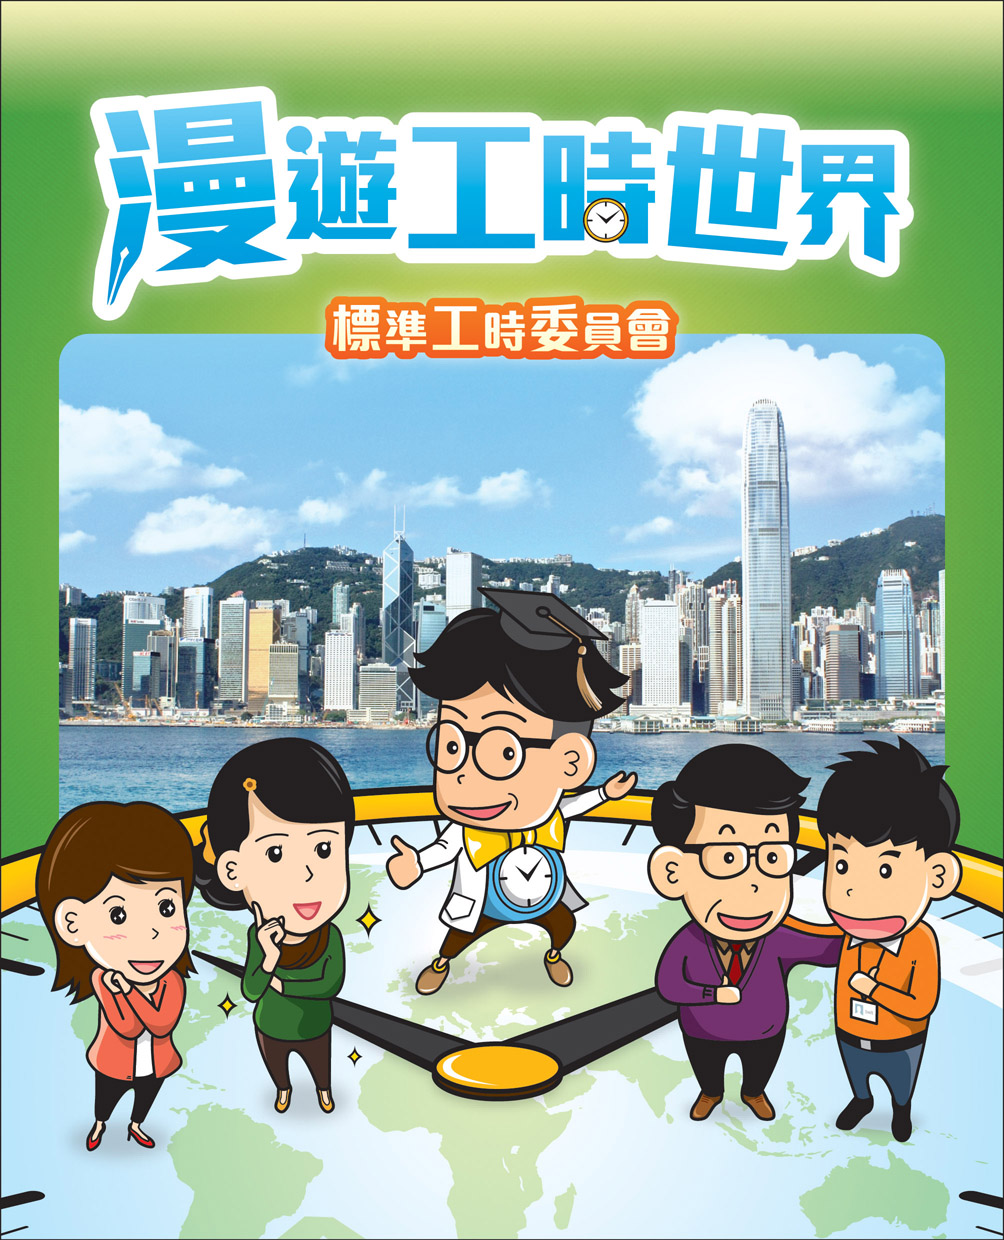 由标准工时委员会制作的《漫游工时世界》漫画（只有中文版本）。